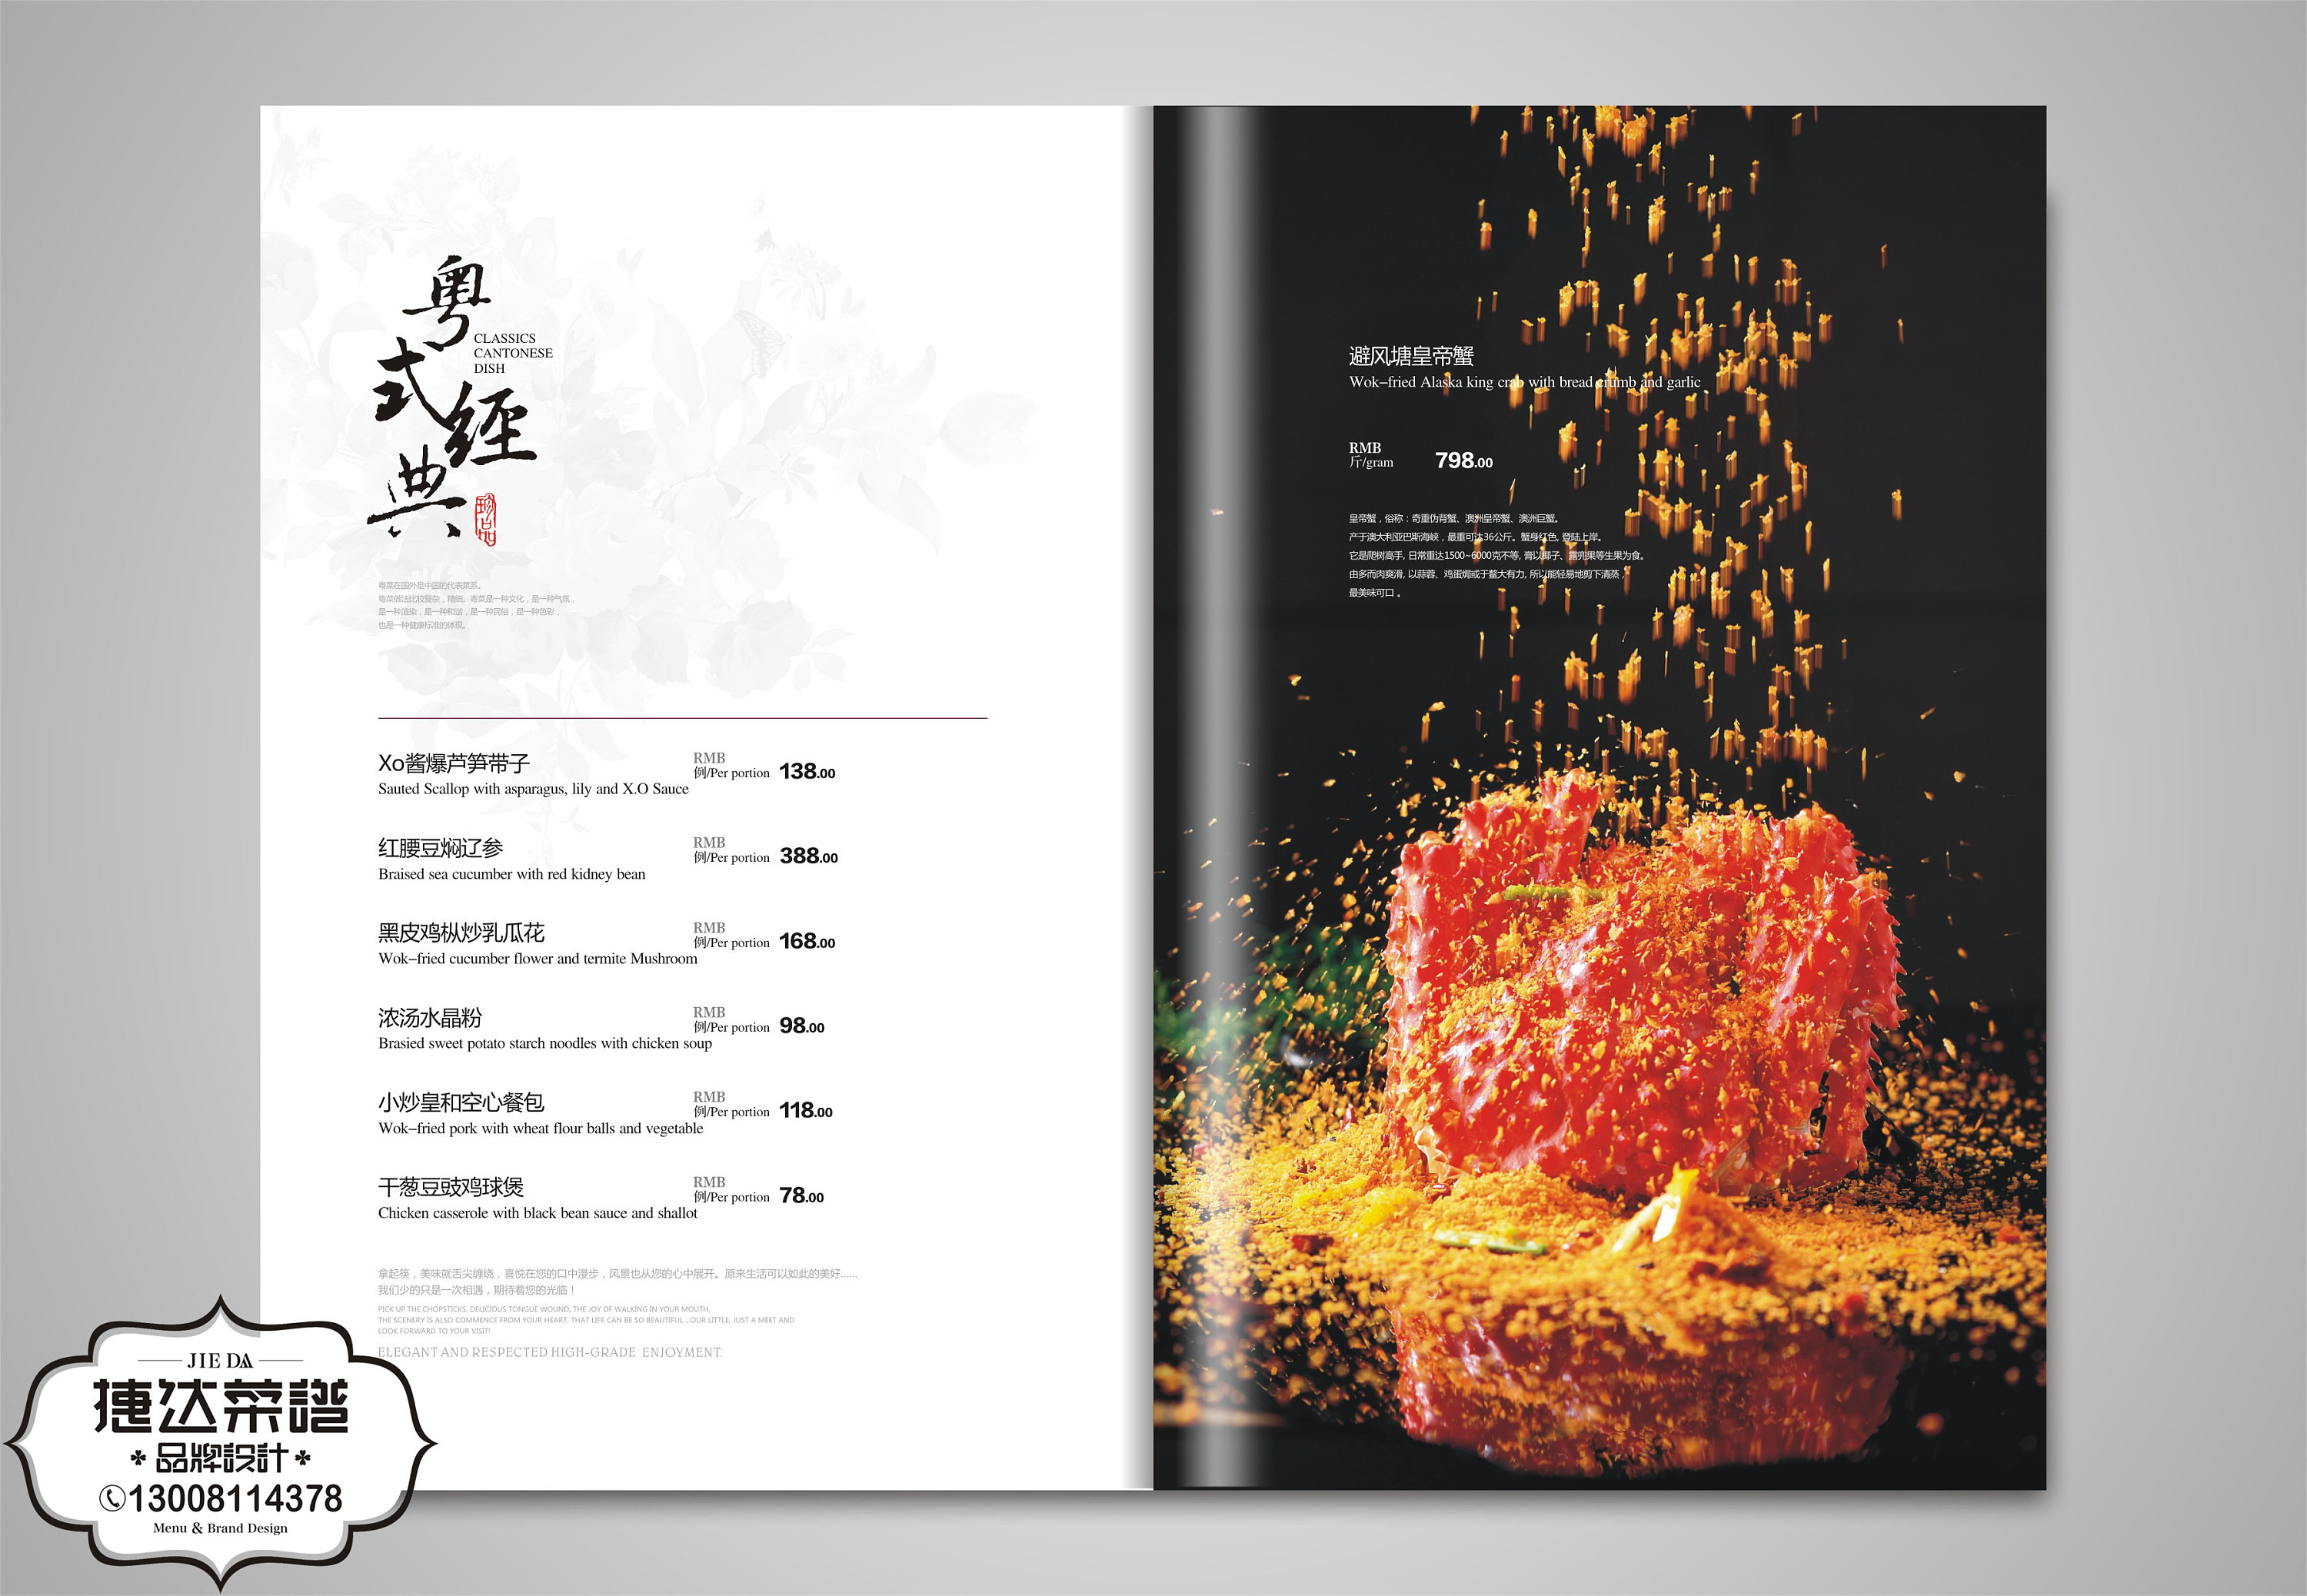 中餐菜谱设计展示,星级酒店菜谱案例参考,菜谱设计公司